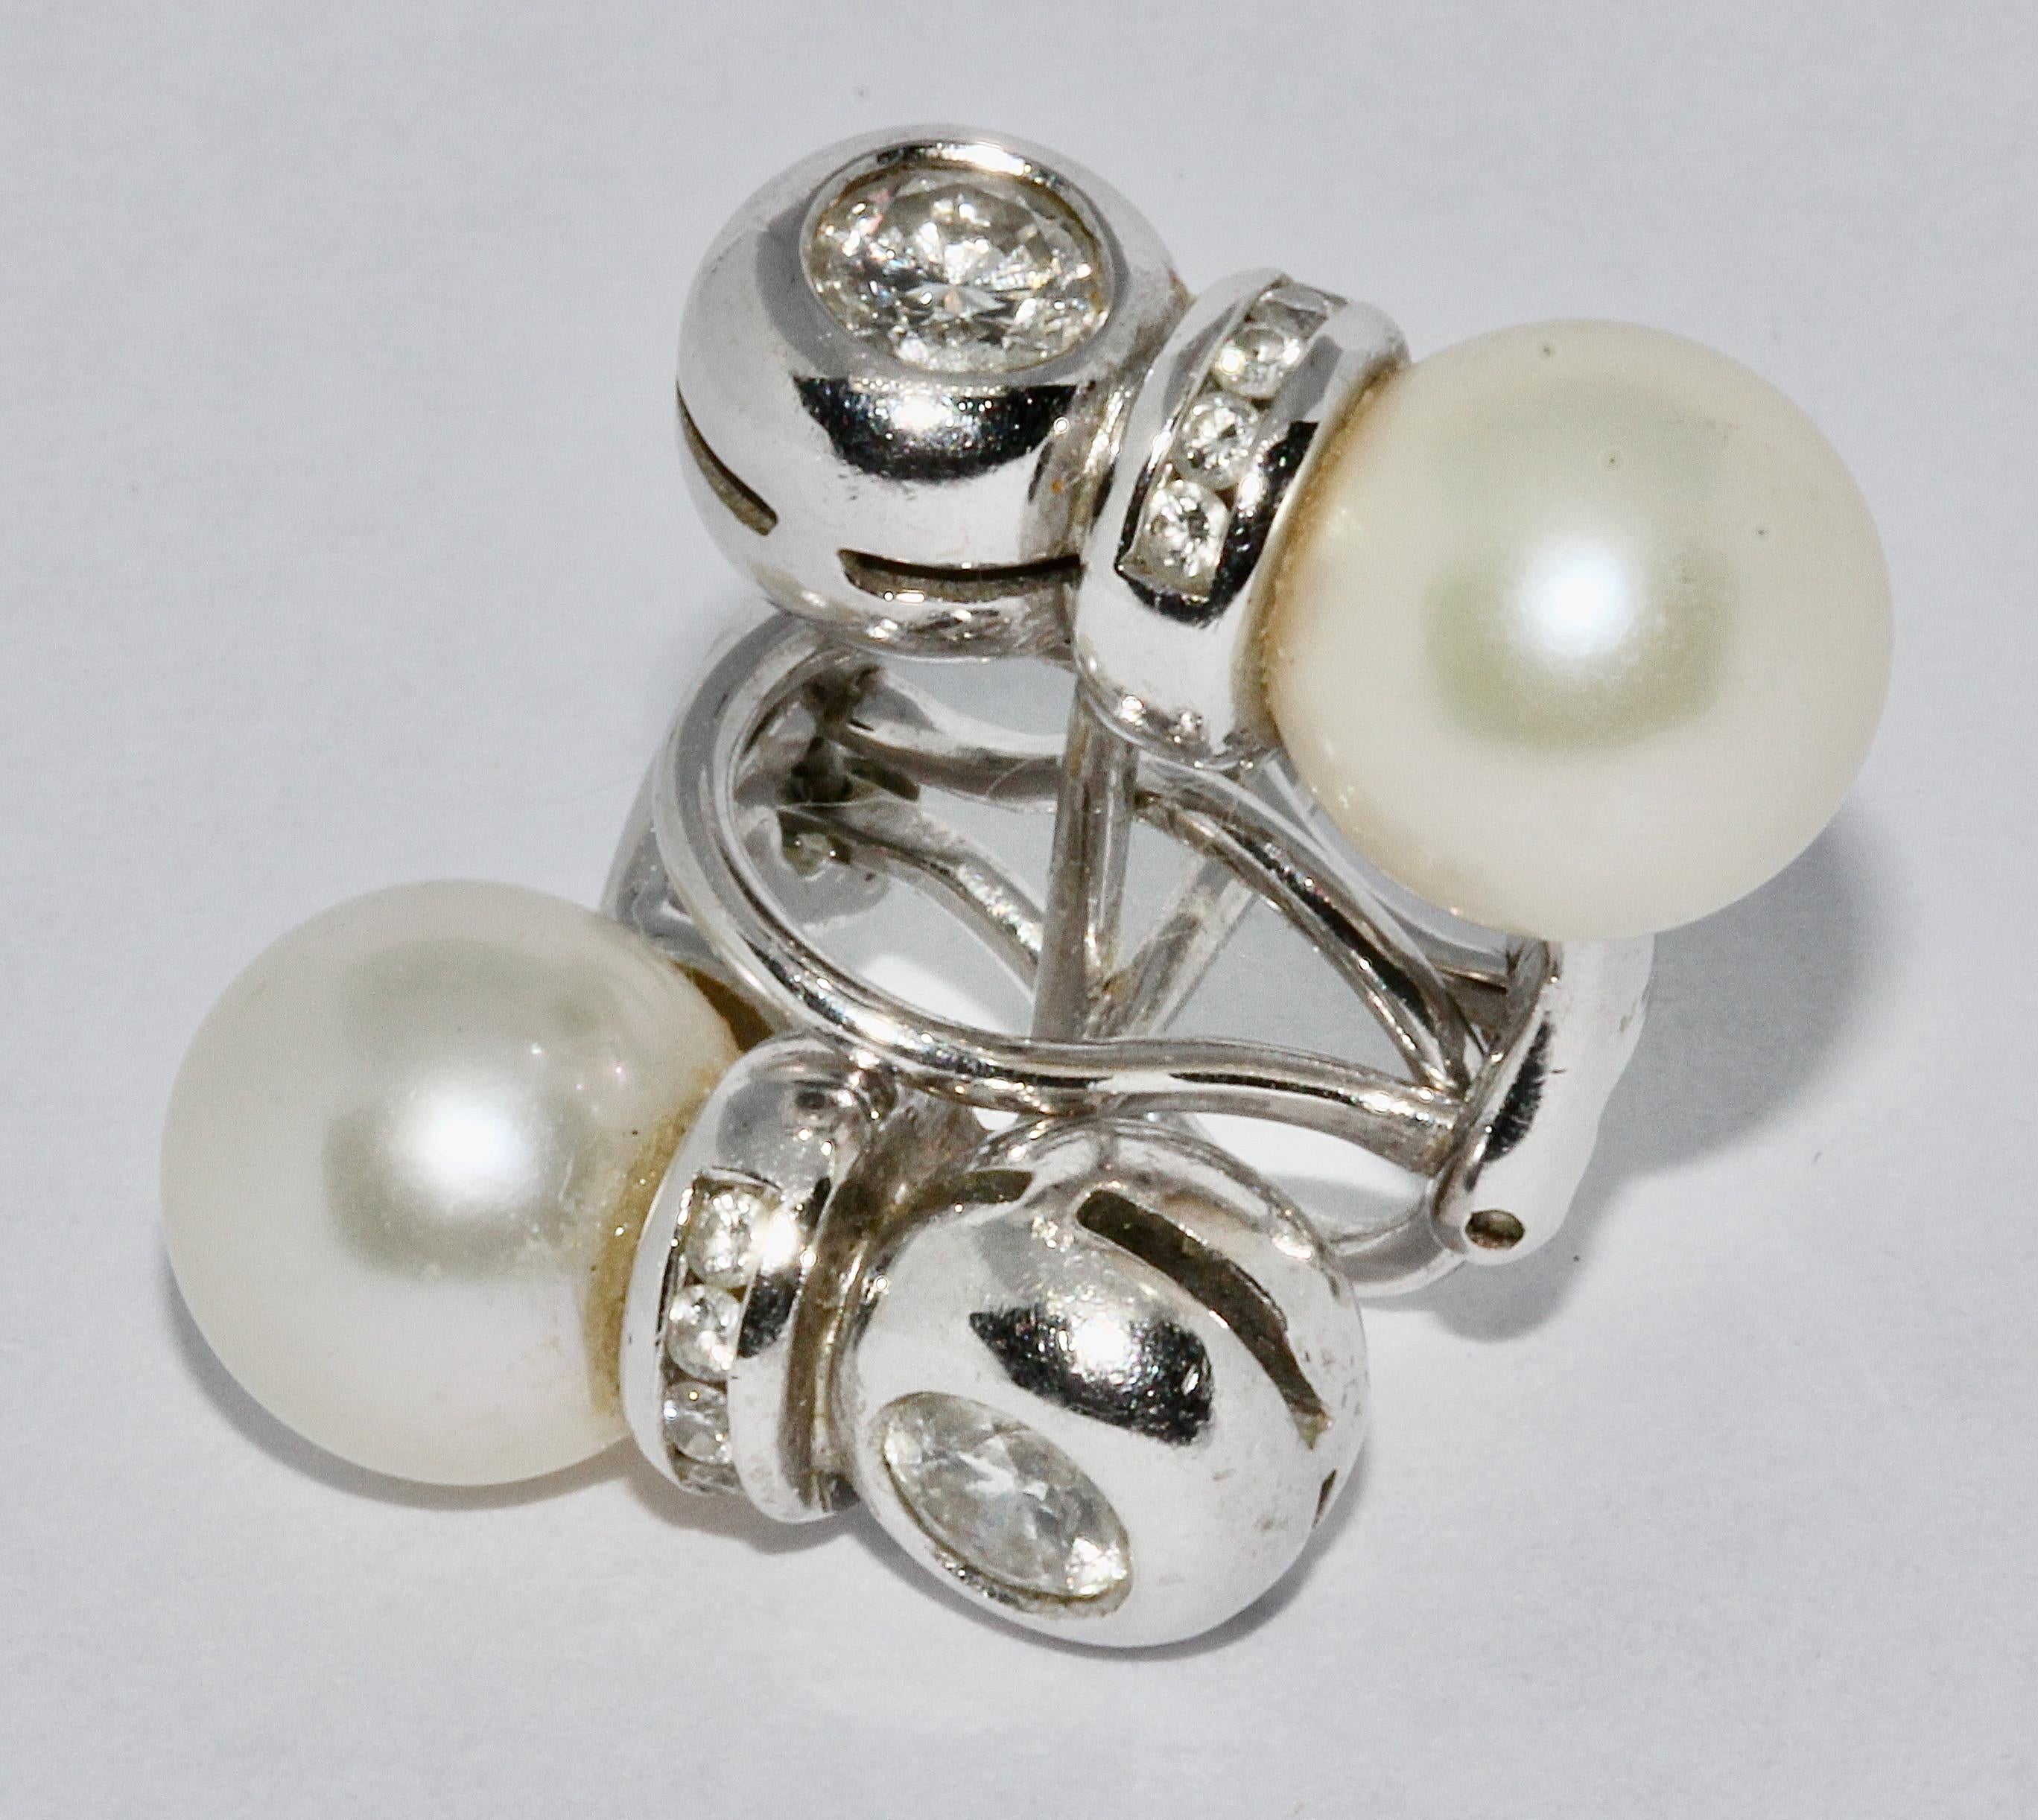 Boucles d'oreille perles et diamants, or blanc.

Chaque boucle d'oreille est sertie d'un solitaire brillant d'environ 0,3 carat et de 5 petits diamants de très bonne qualité.

Certificat d'authenticité inclus.